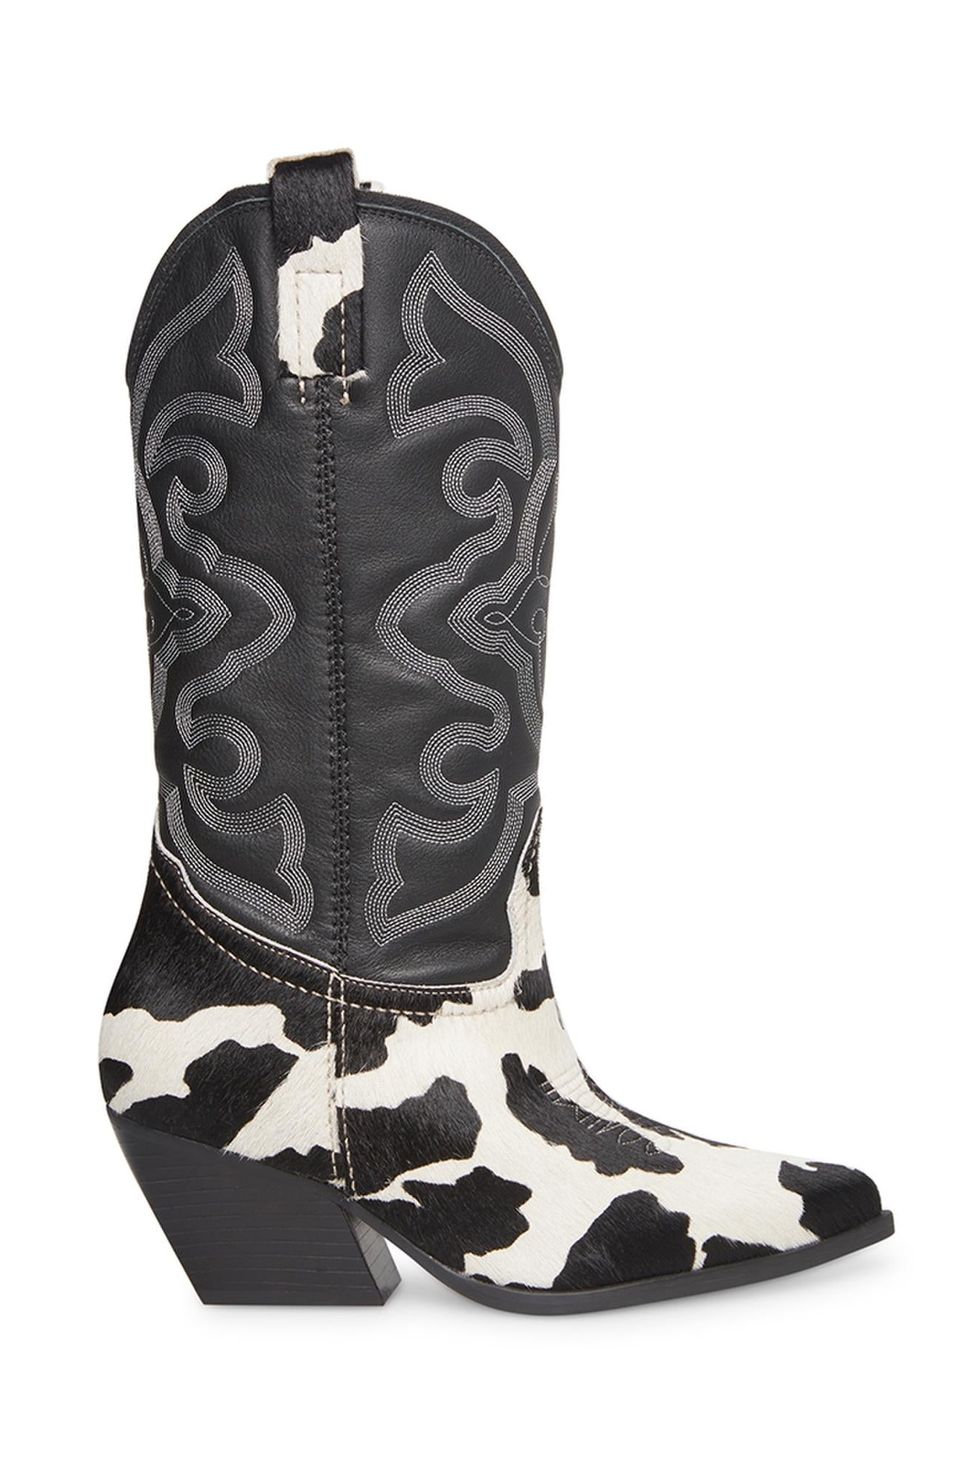 West Black / White Cowboy Boots 